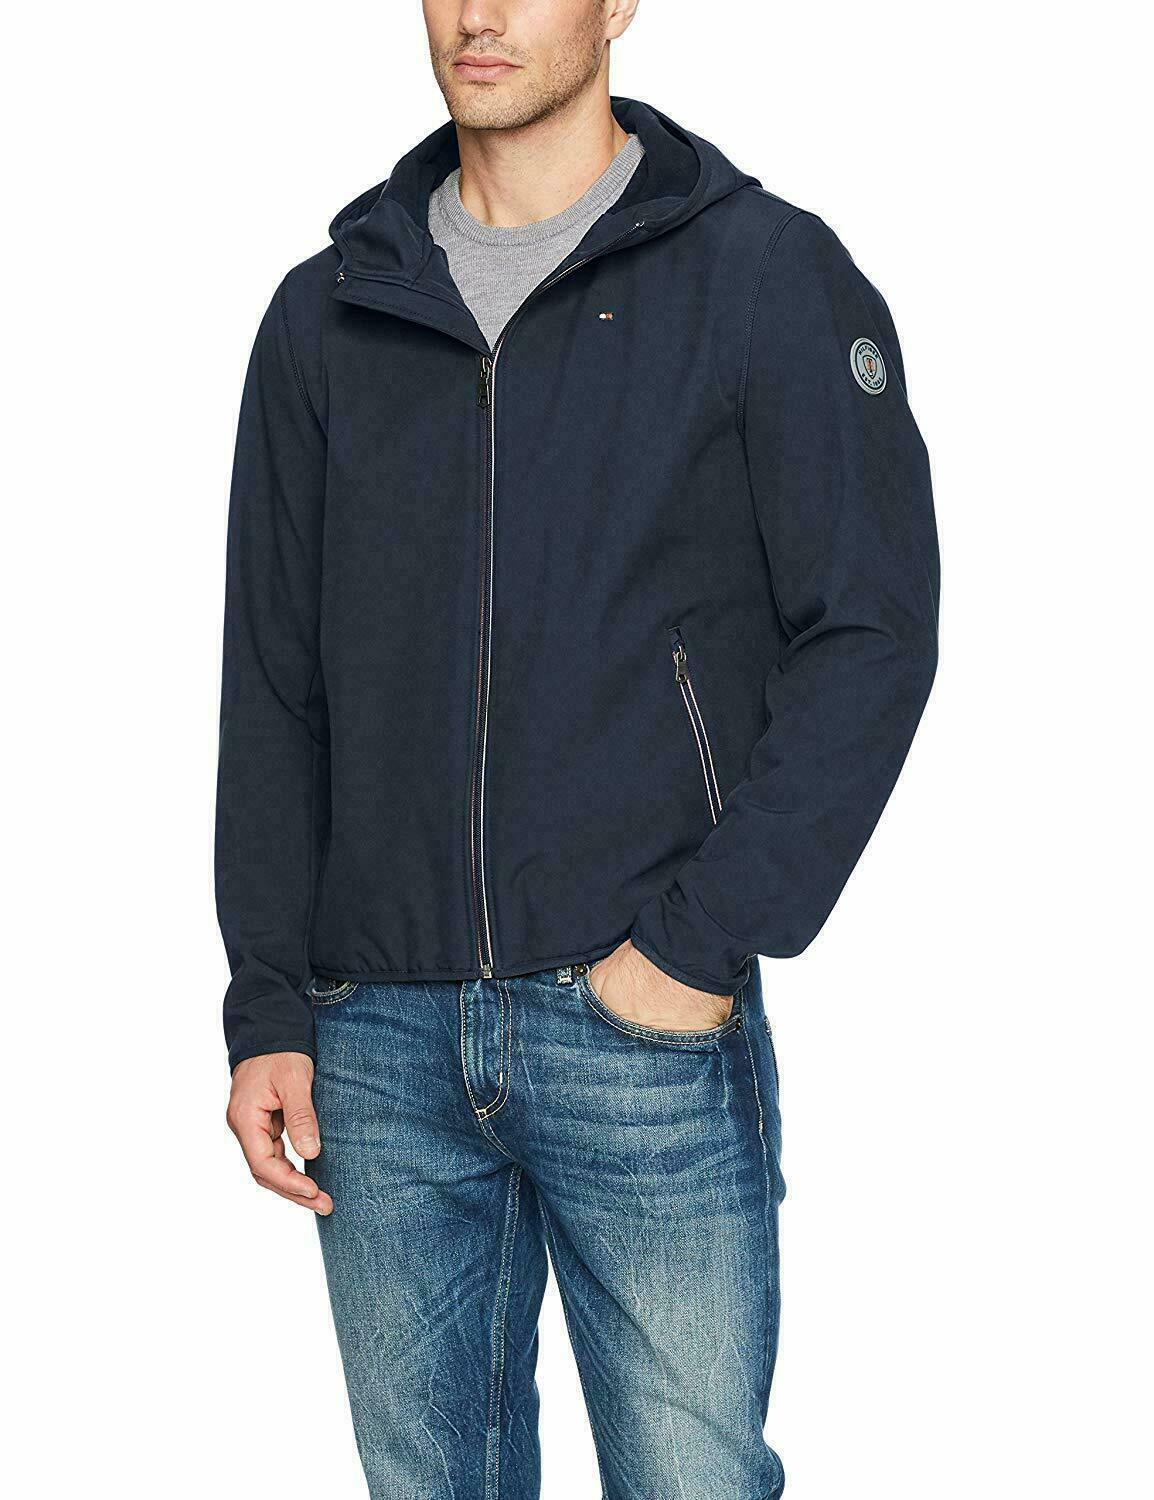 Tommy Hilfiger Mens Hooded Soft Shell Jacket Medium Full Zip Navy Blue